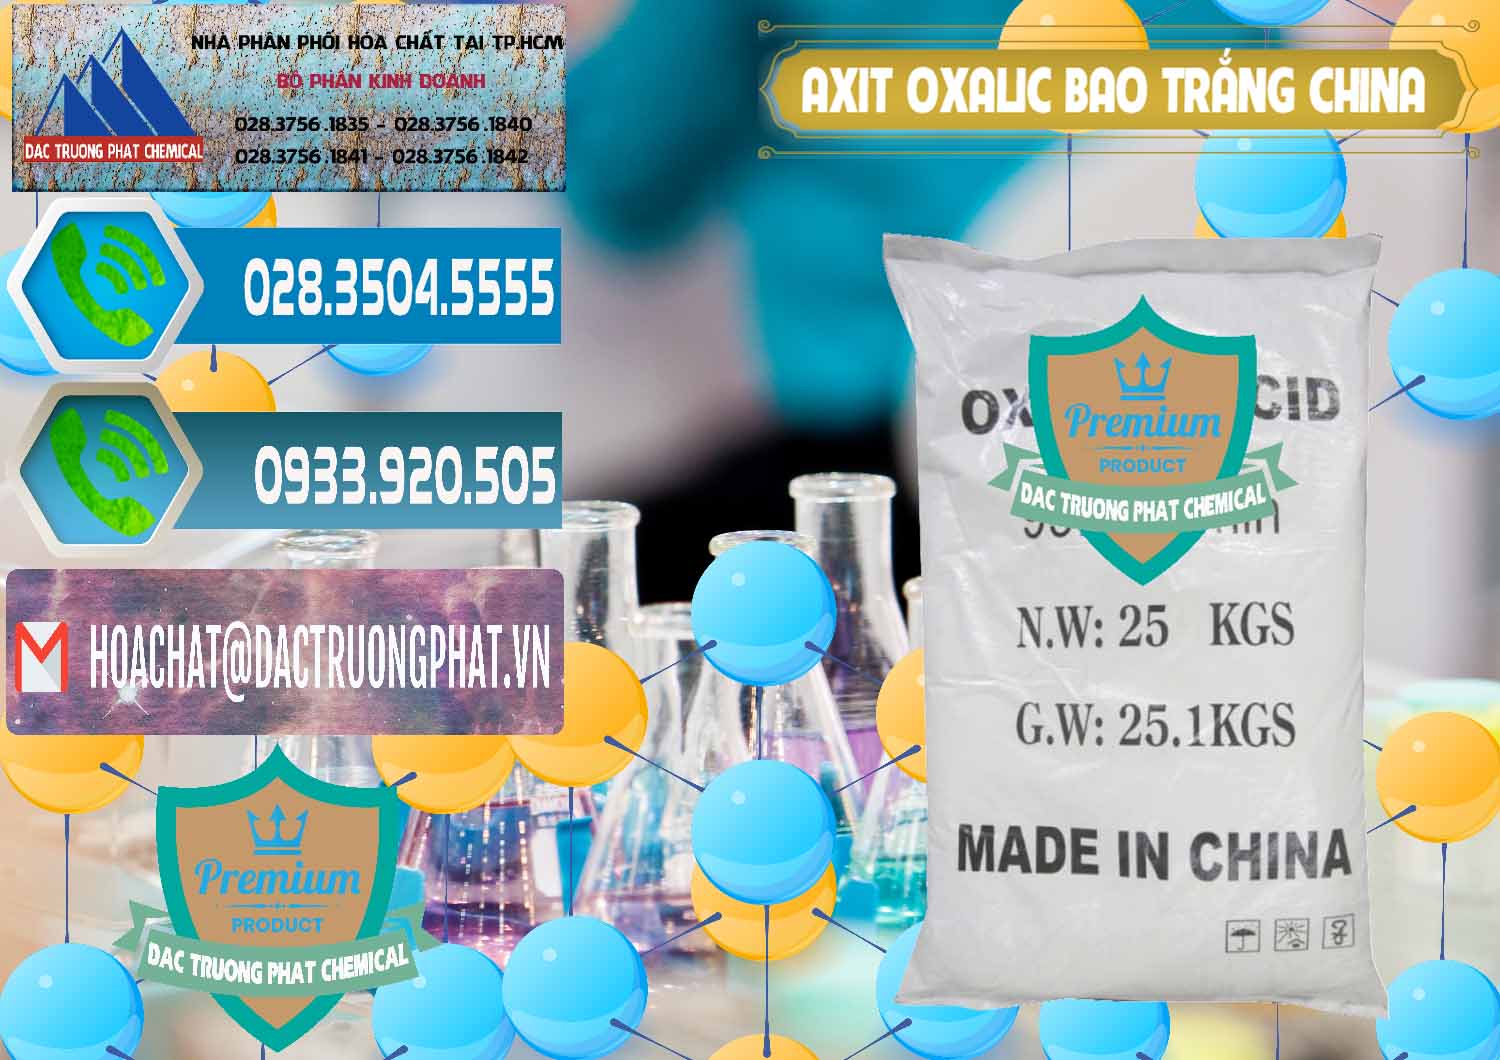 Cty bán ( cung ứng ) Acid Oxalic – Axit Oxalic 99.6% Bao Trắng Trung Quốc China - 0270 - Đơn vị cung cấp _ nhập khẩu hóa chất tại TP.HCM - congtyhoachat.net